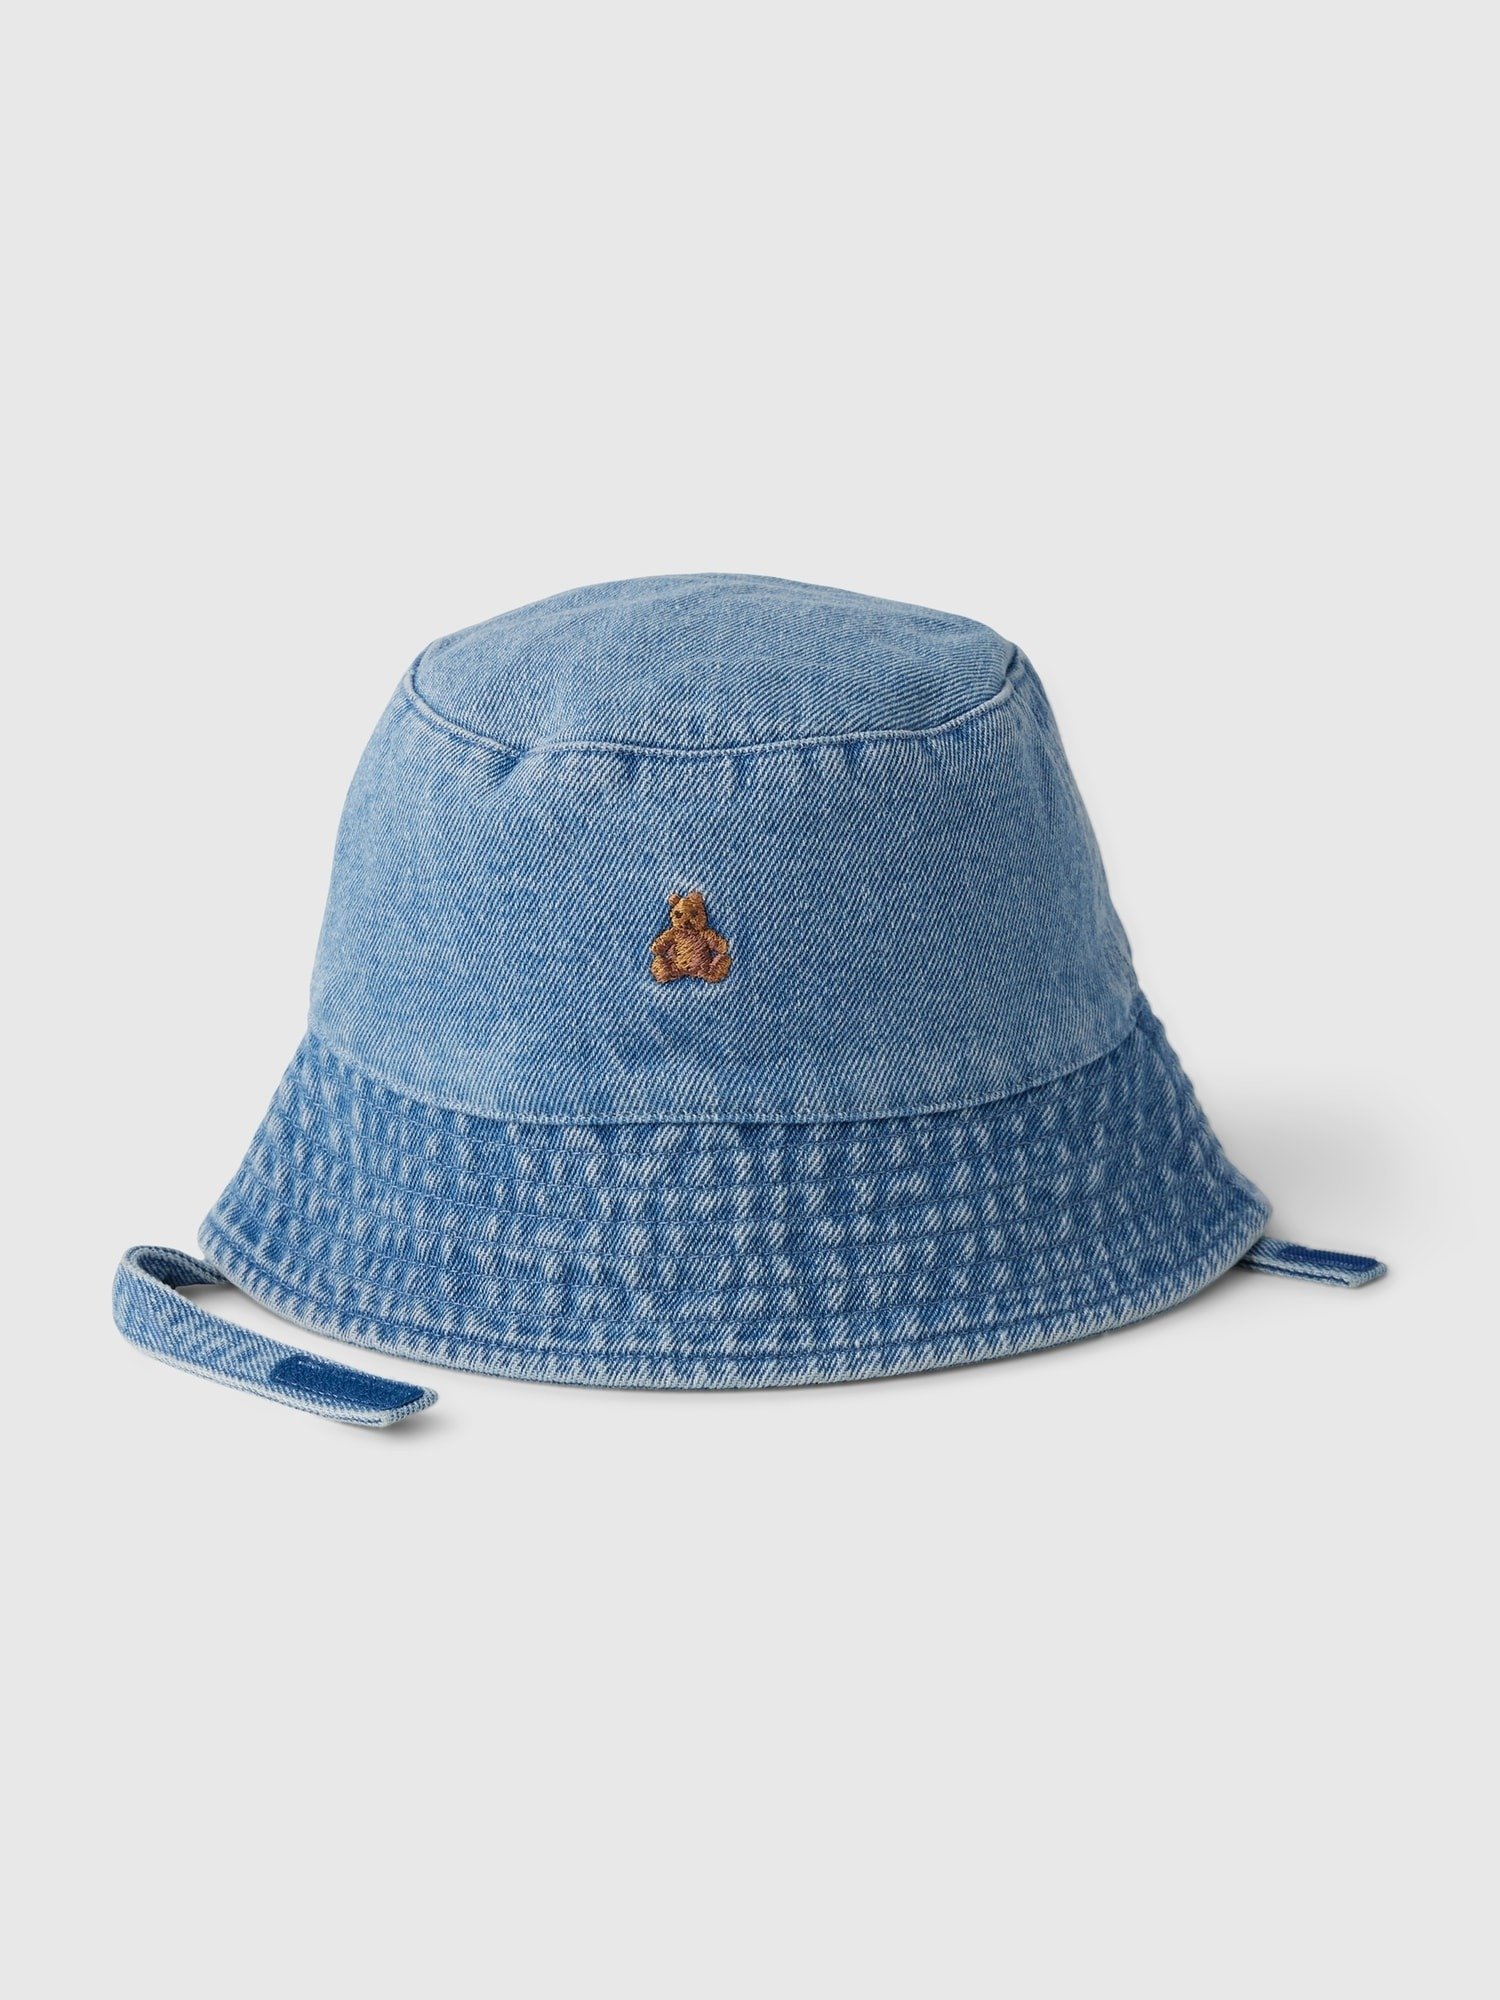 Brannan Bear İşlemeli Bucket Denim Şapka product image